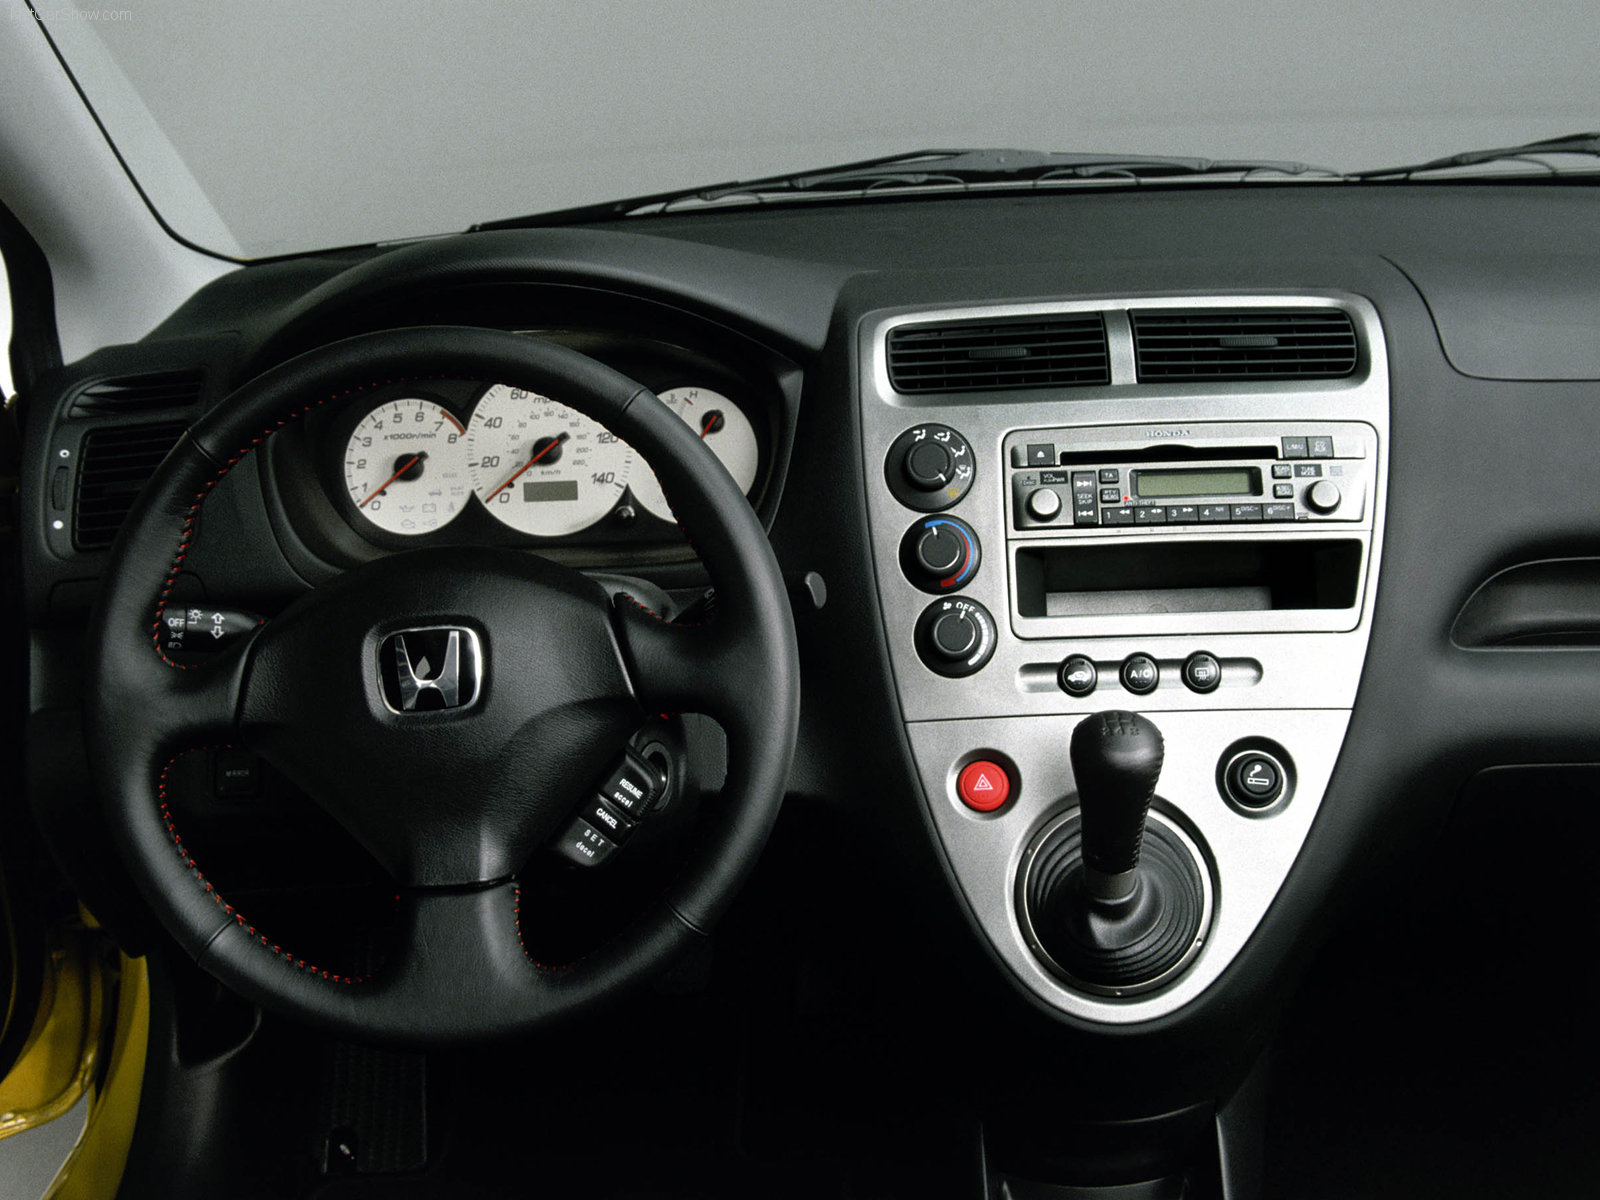 Honda Civic Si Concept 2001 Honda-Civic_Si_Concept-2001-1600-0a